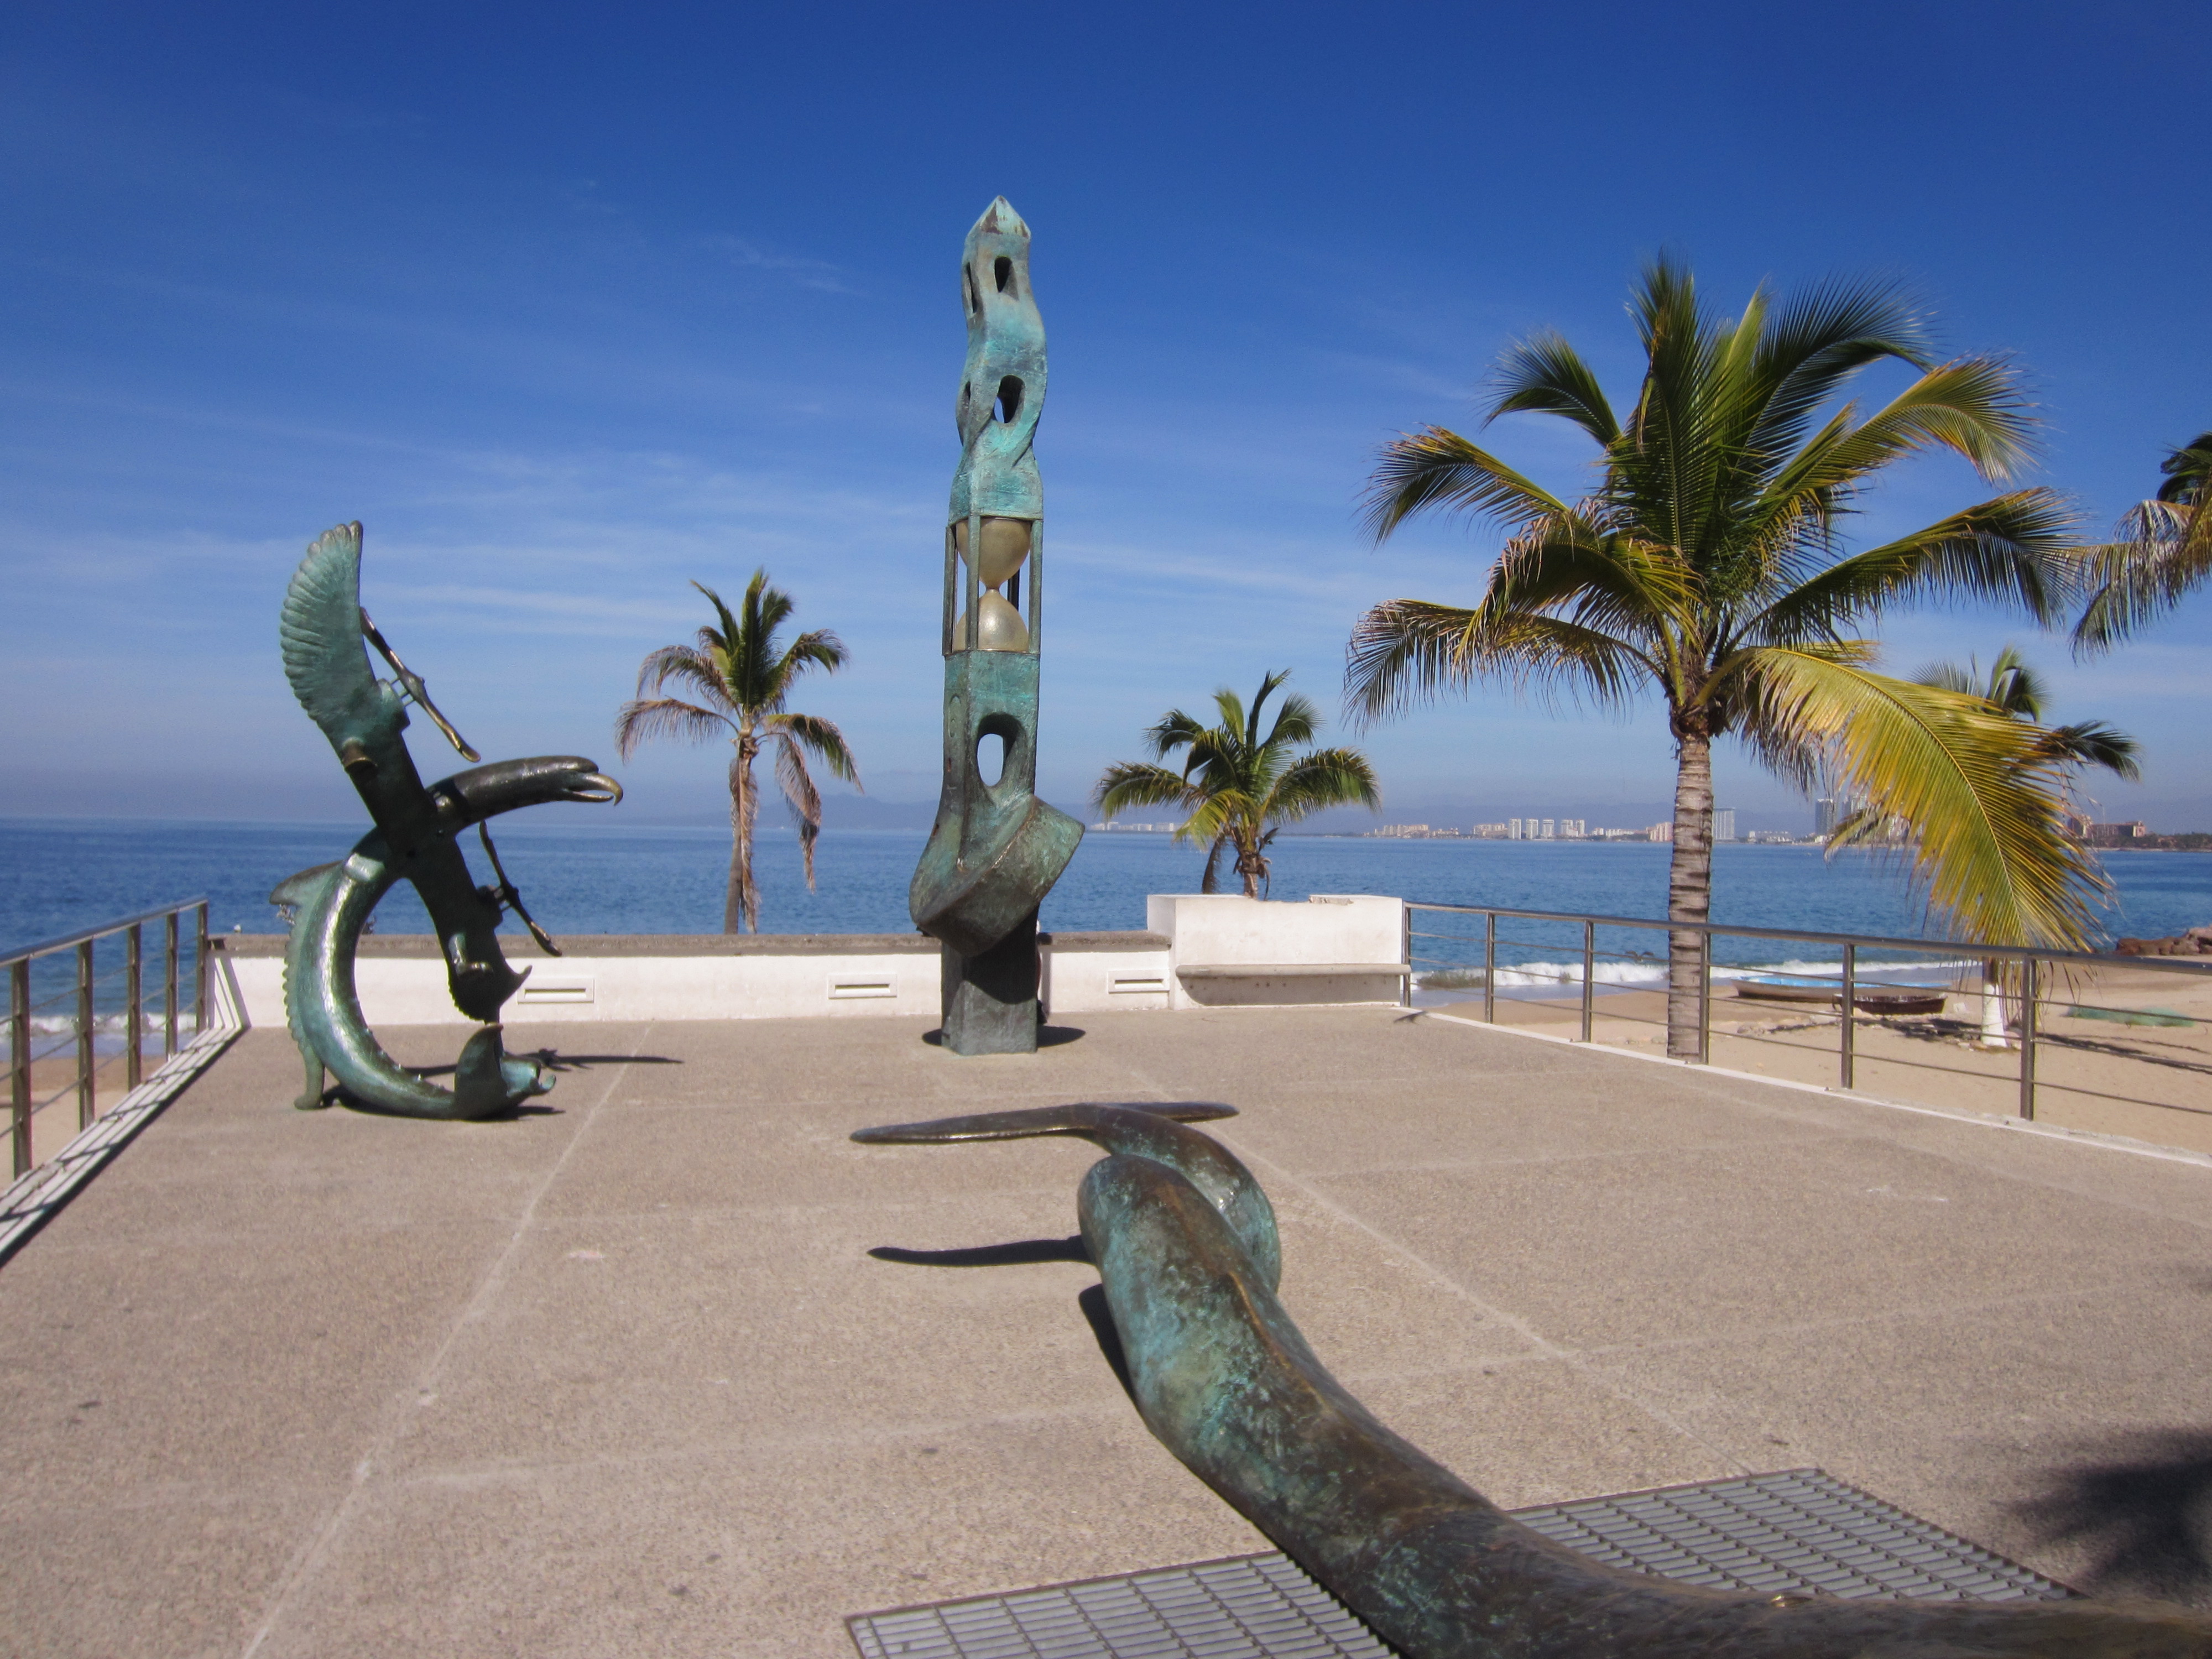 File:Malecón, Puerto Vallarta (2014)  - Wikimedia Commons